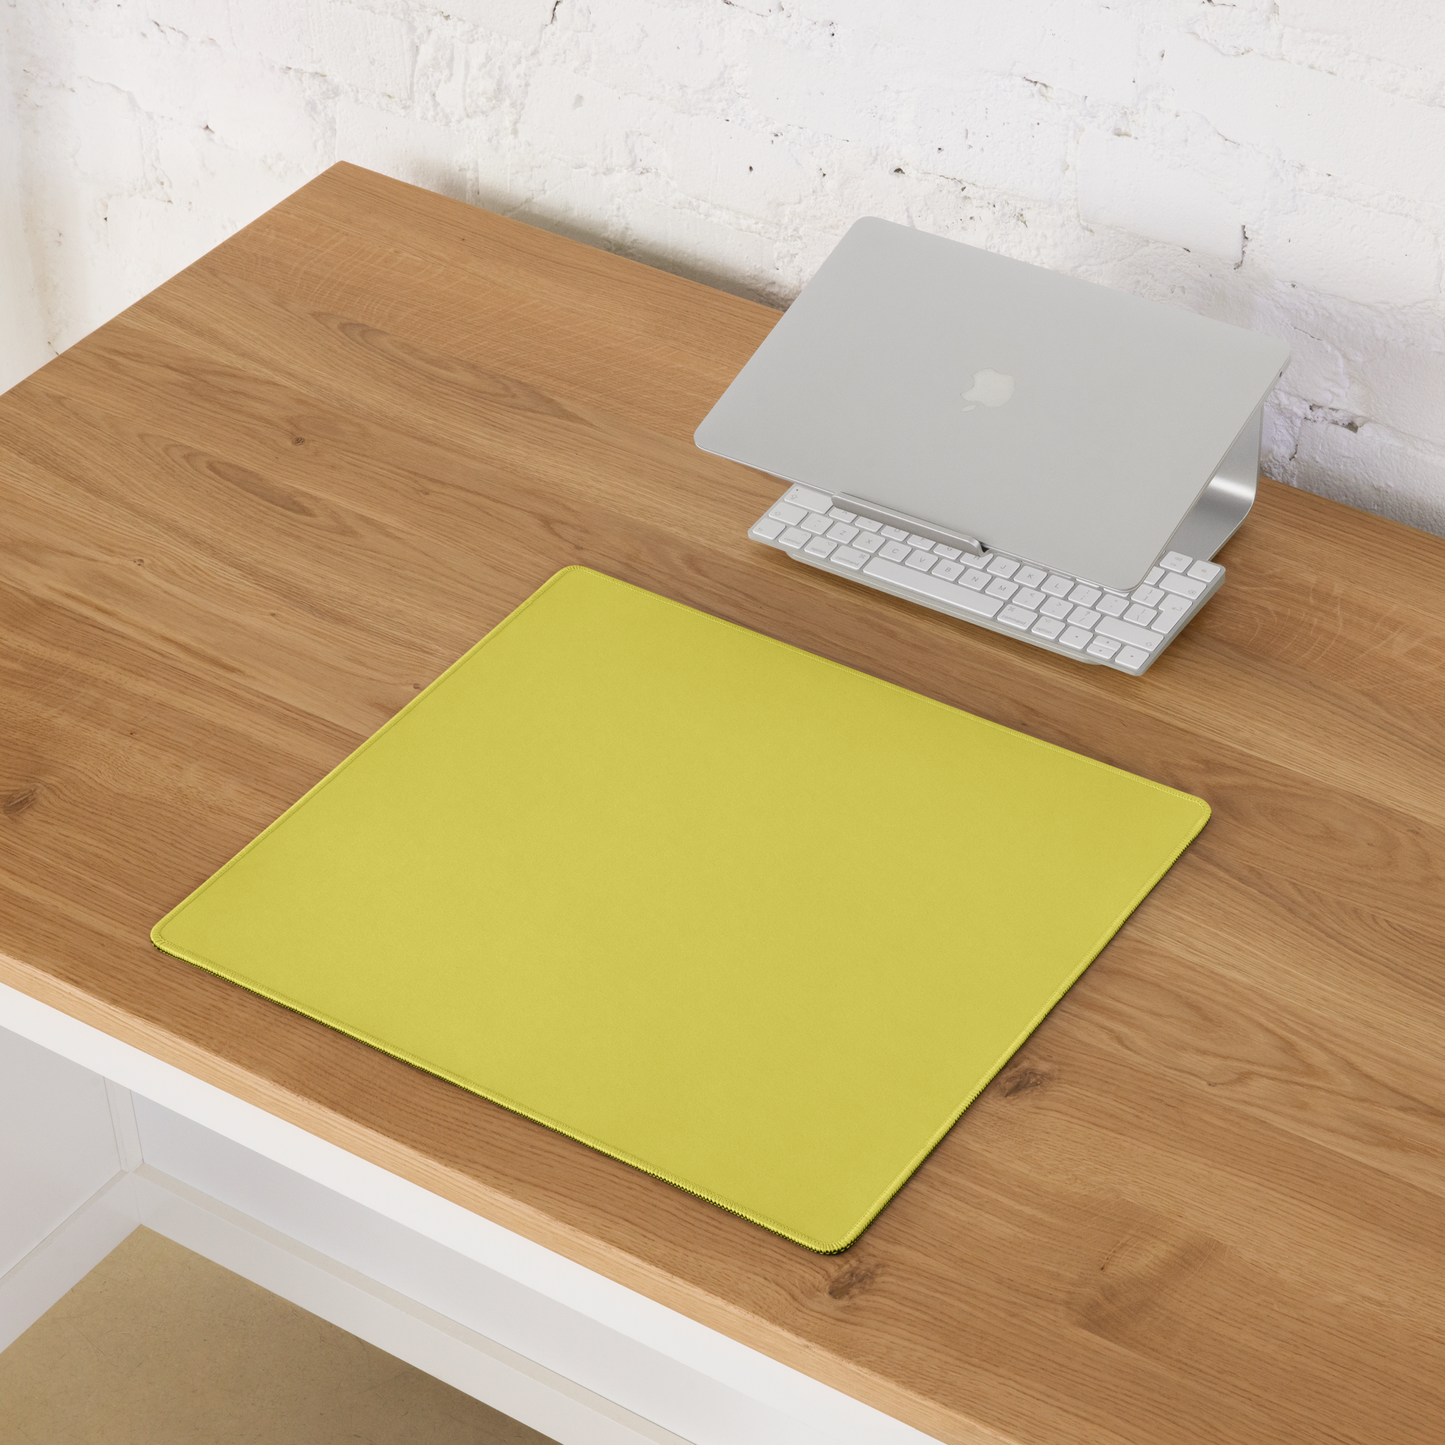 Yellow Desk Pad -  Pantone 100